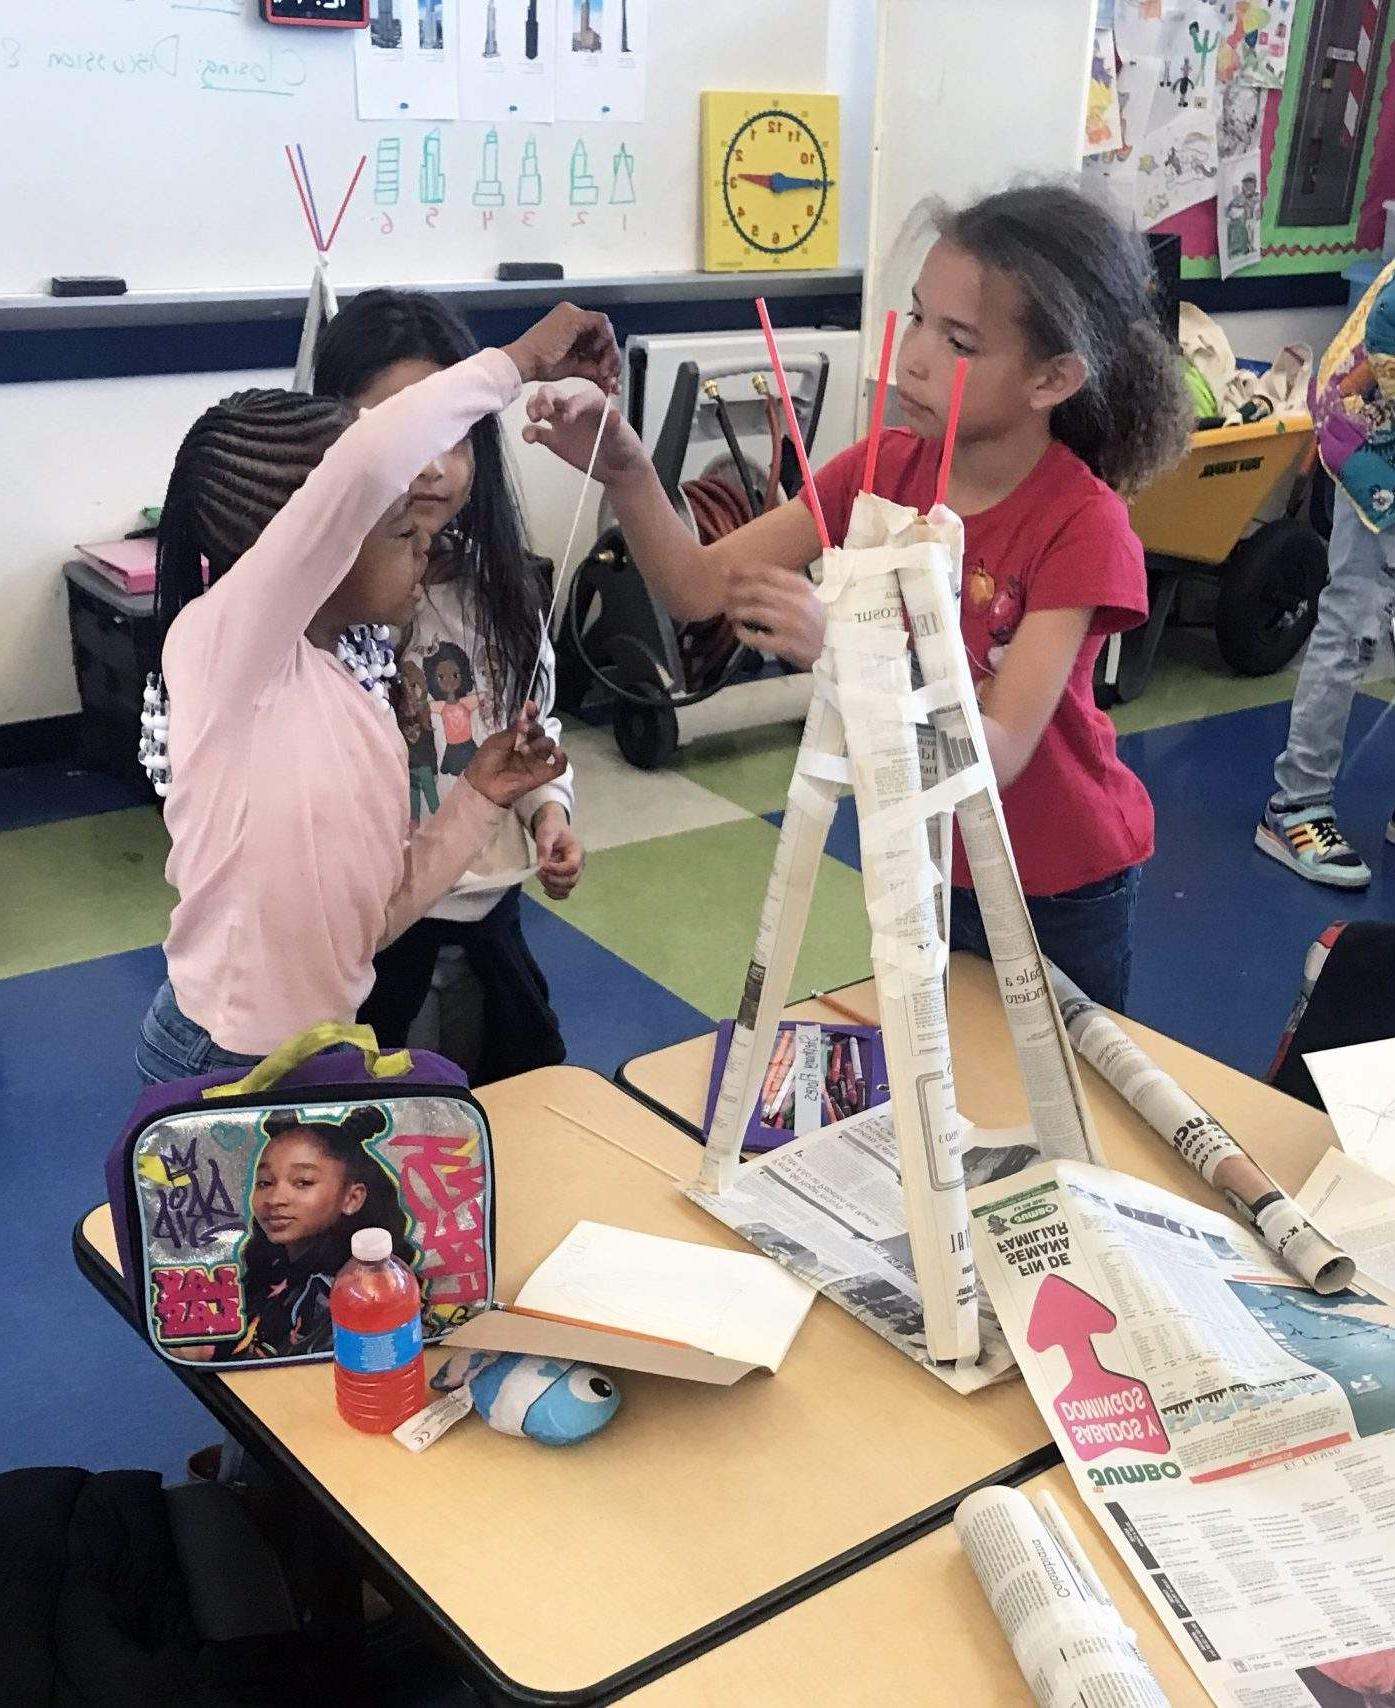 三个女孩准备在背景中添加更多的胶带，用胶带把卷起的报纸粘在一起形成一个棱镜形状的结构.